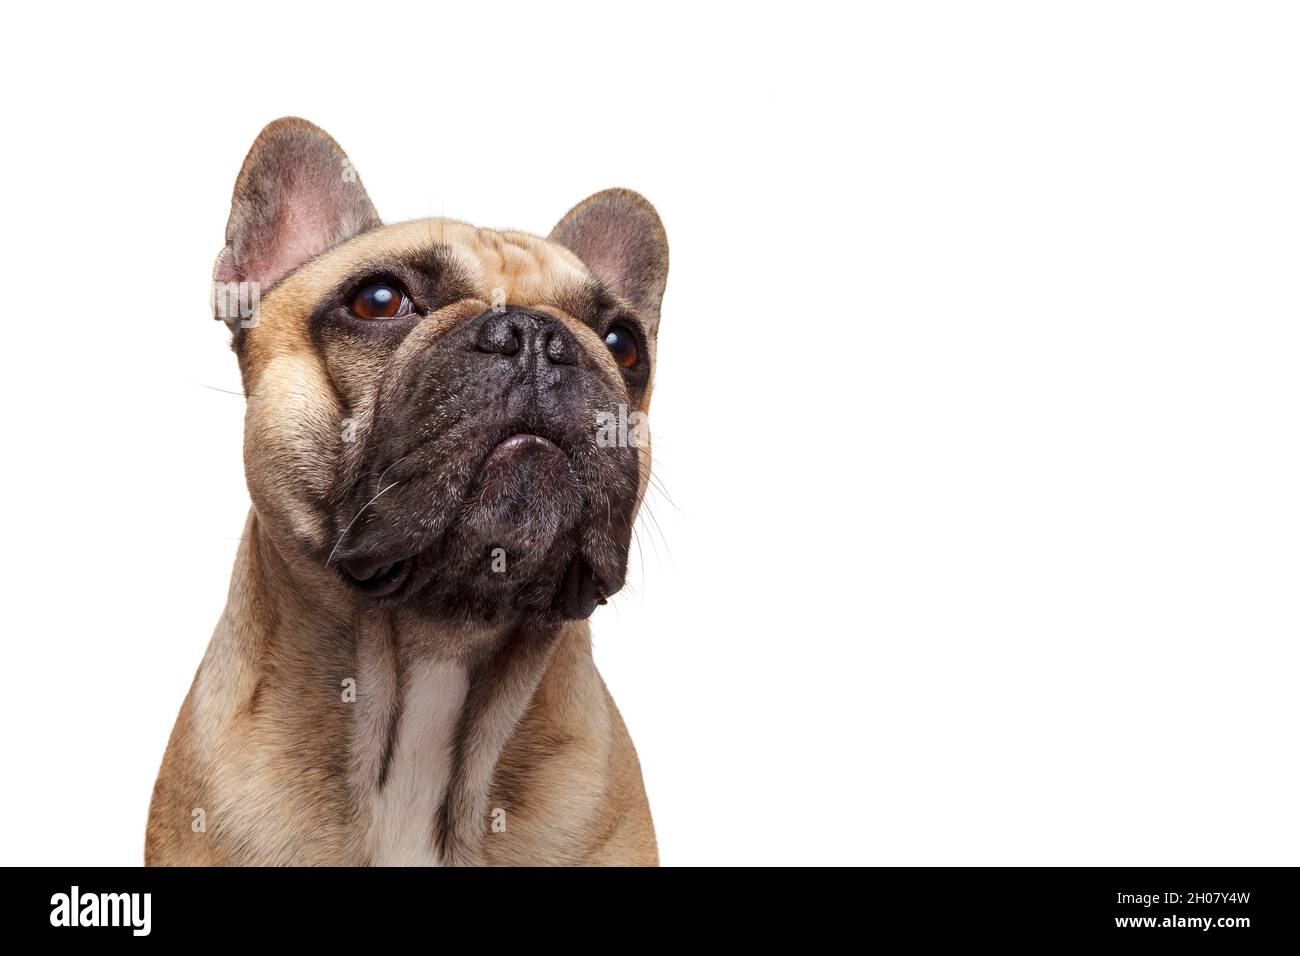 Formidable dog. French bulldog Studio shot isolated against white background. Stock Photo